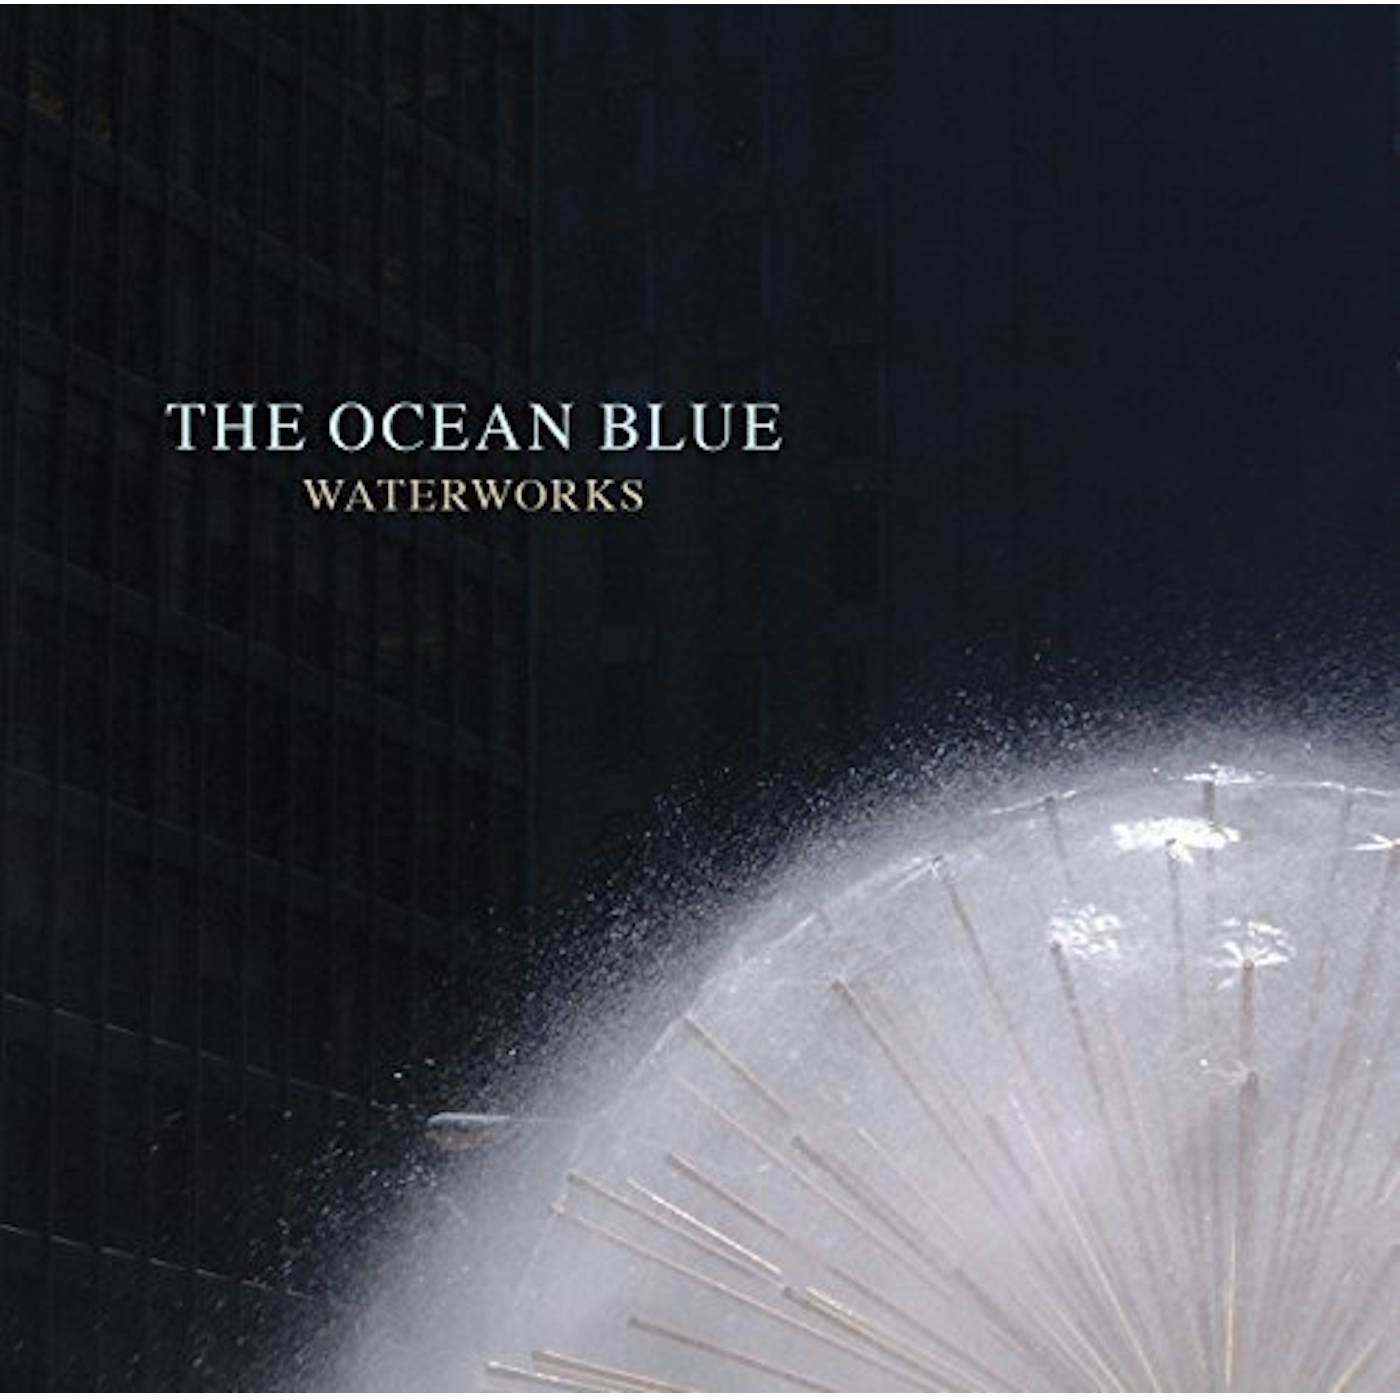 The Ocean Blue WATERWORKS CD